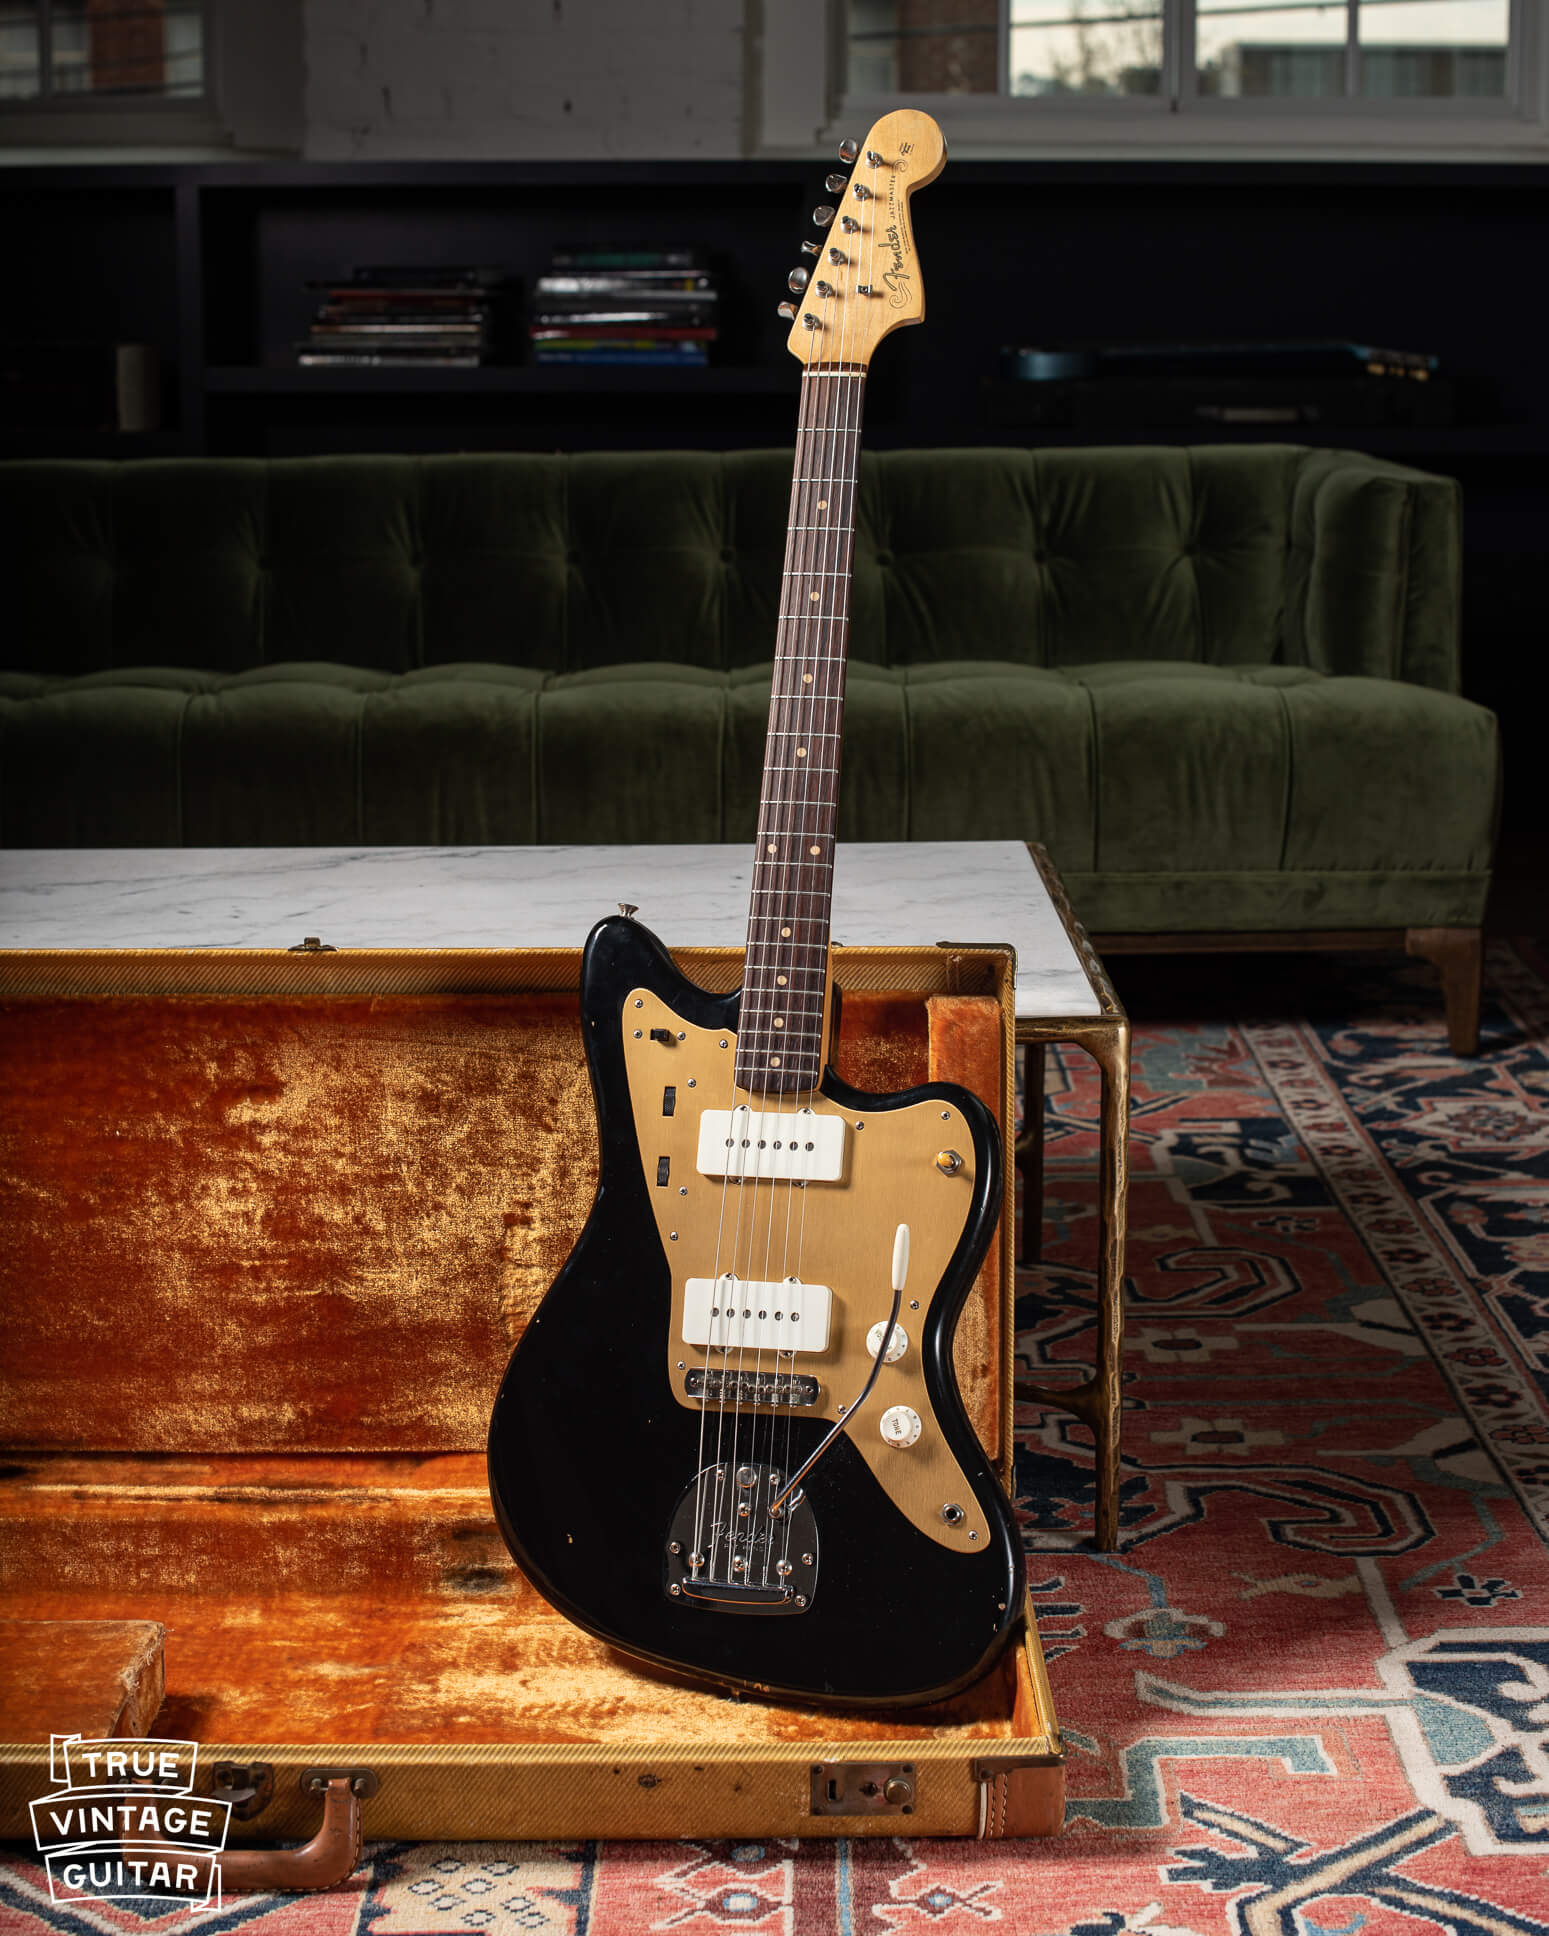 1959 Fender Jazzmaster Black with gold pickguard